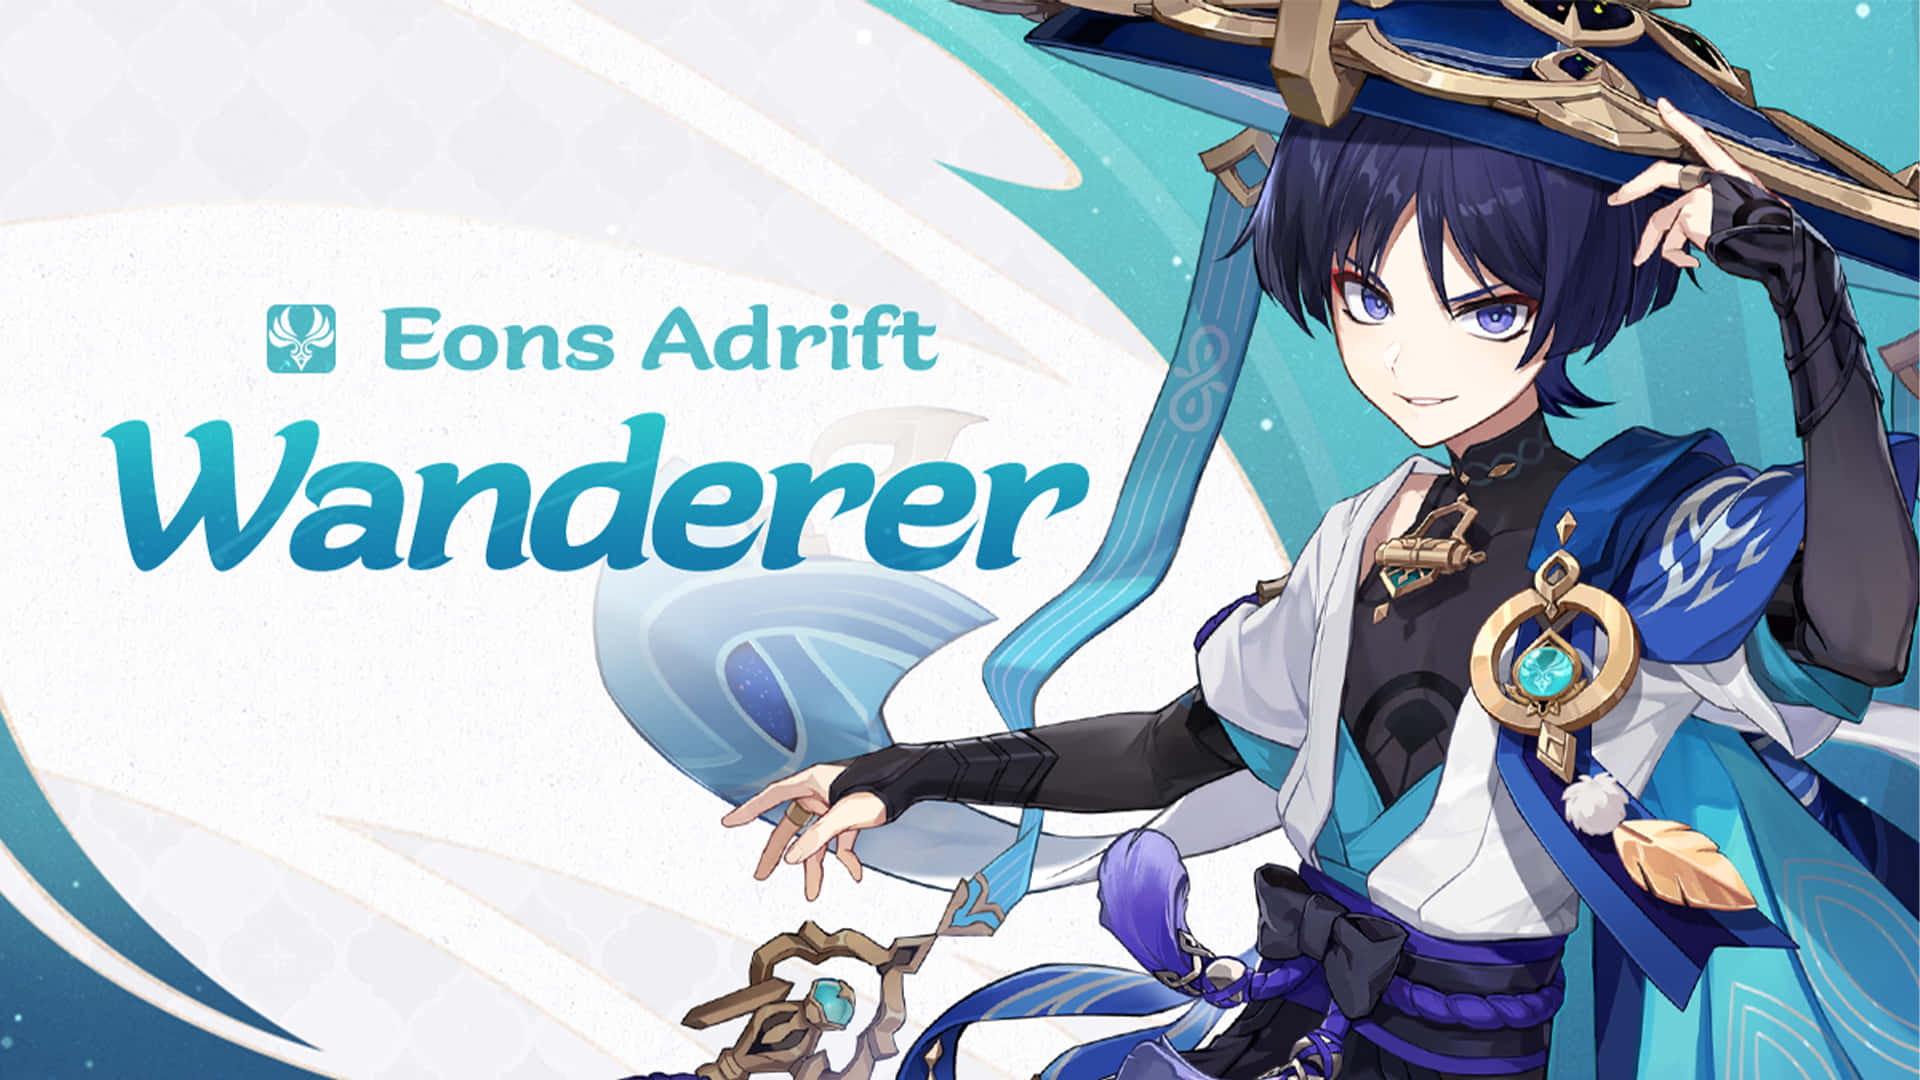 Eons Adrift Wanderer Anime Character Wallpaper